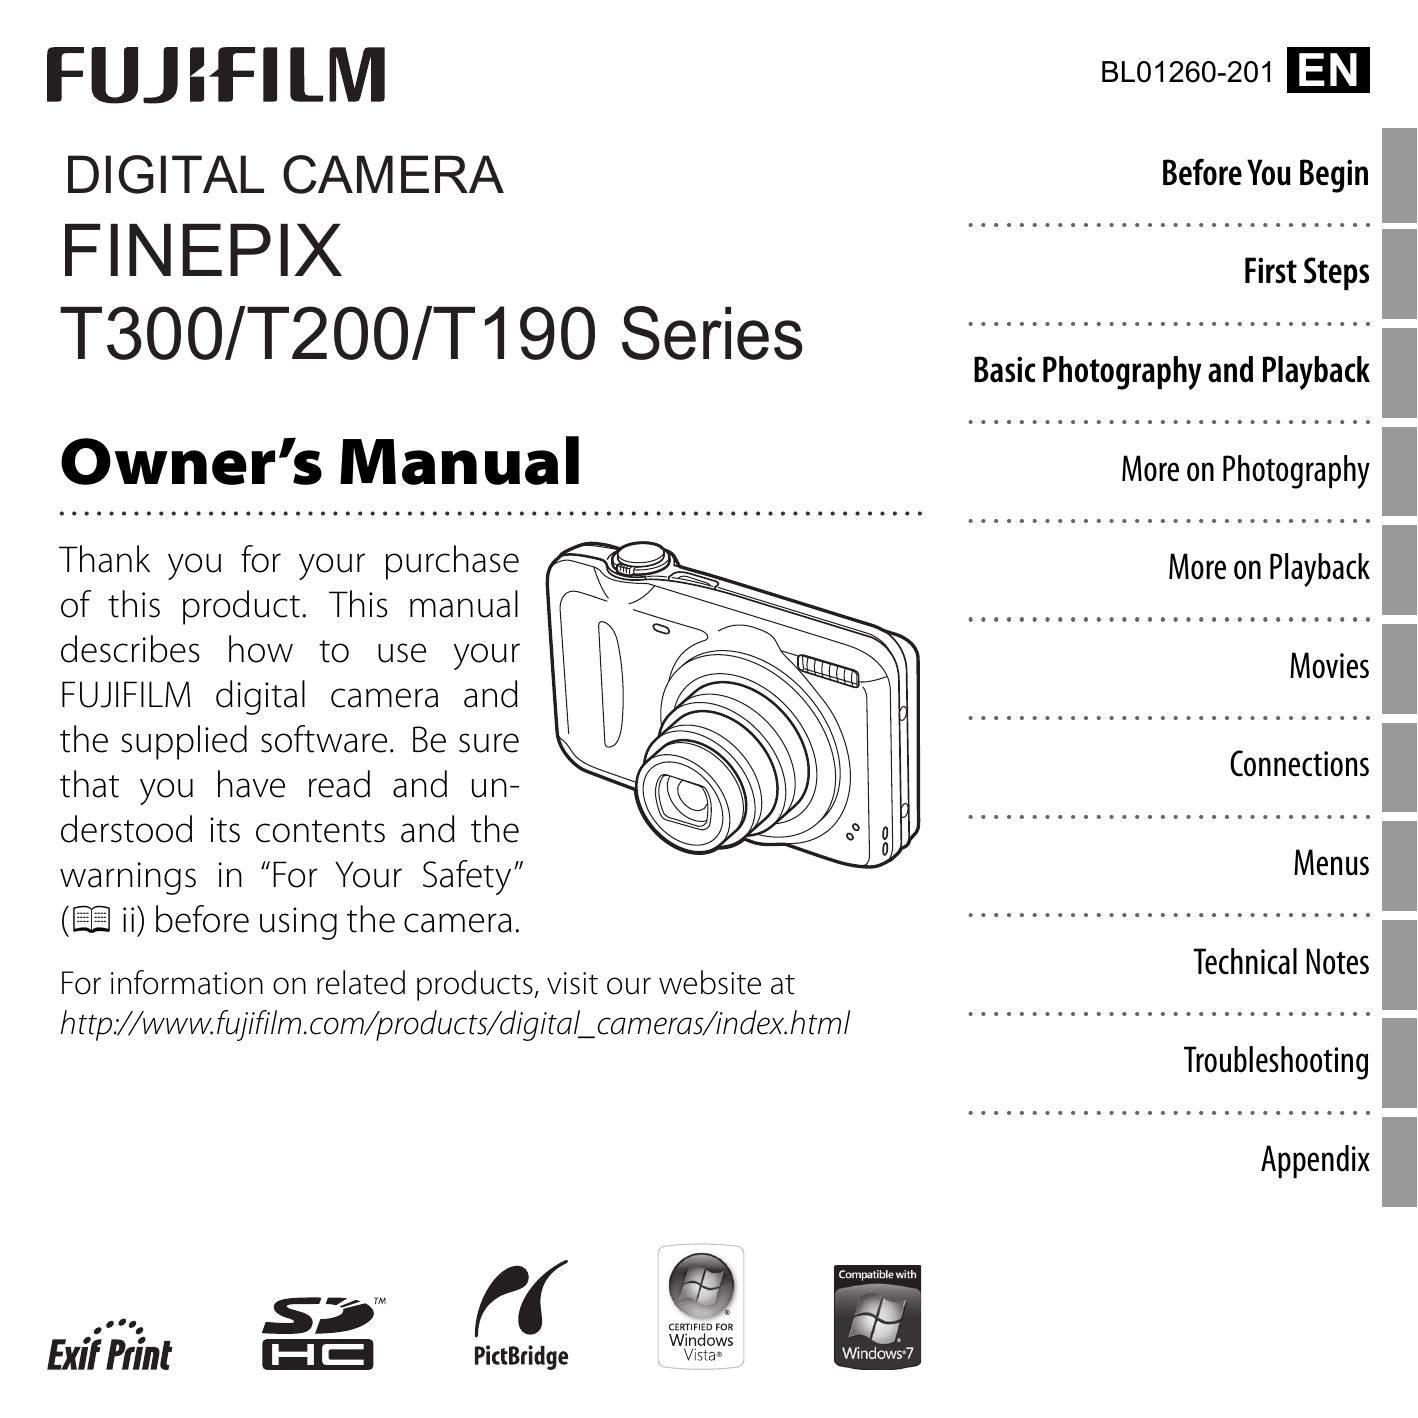 FujiFilm 16130716 KIT Digital Camera User Manual